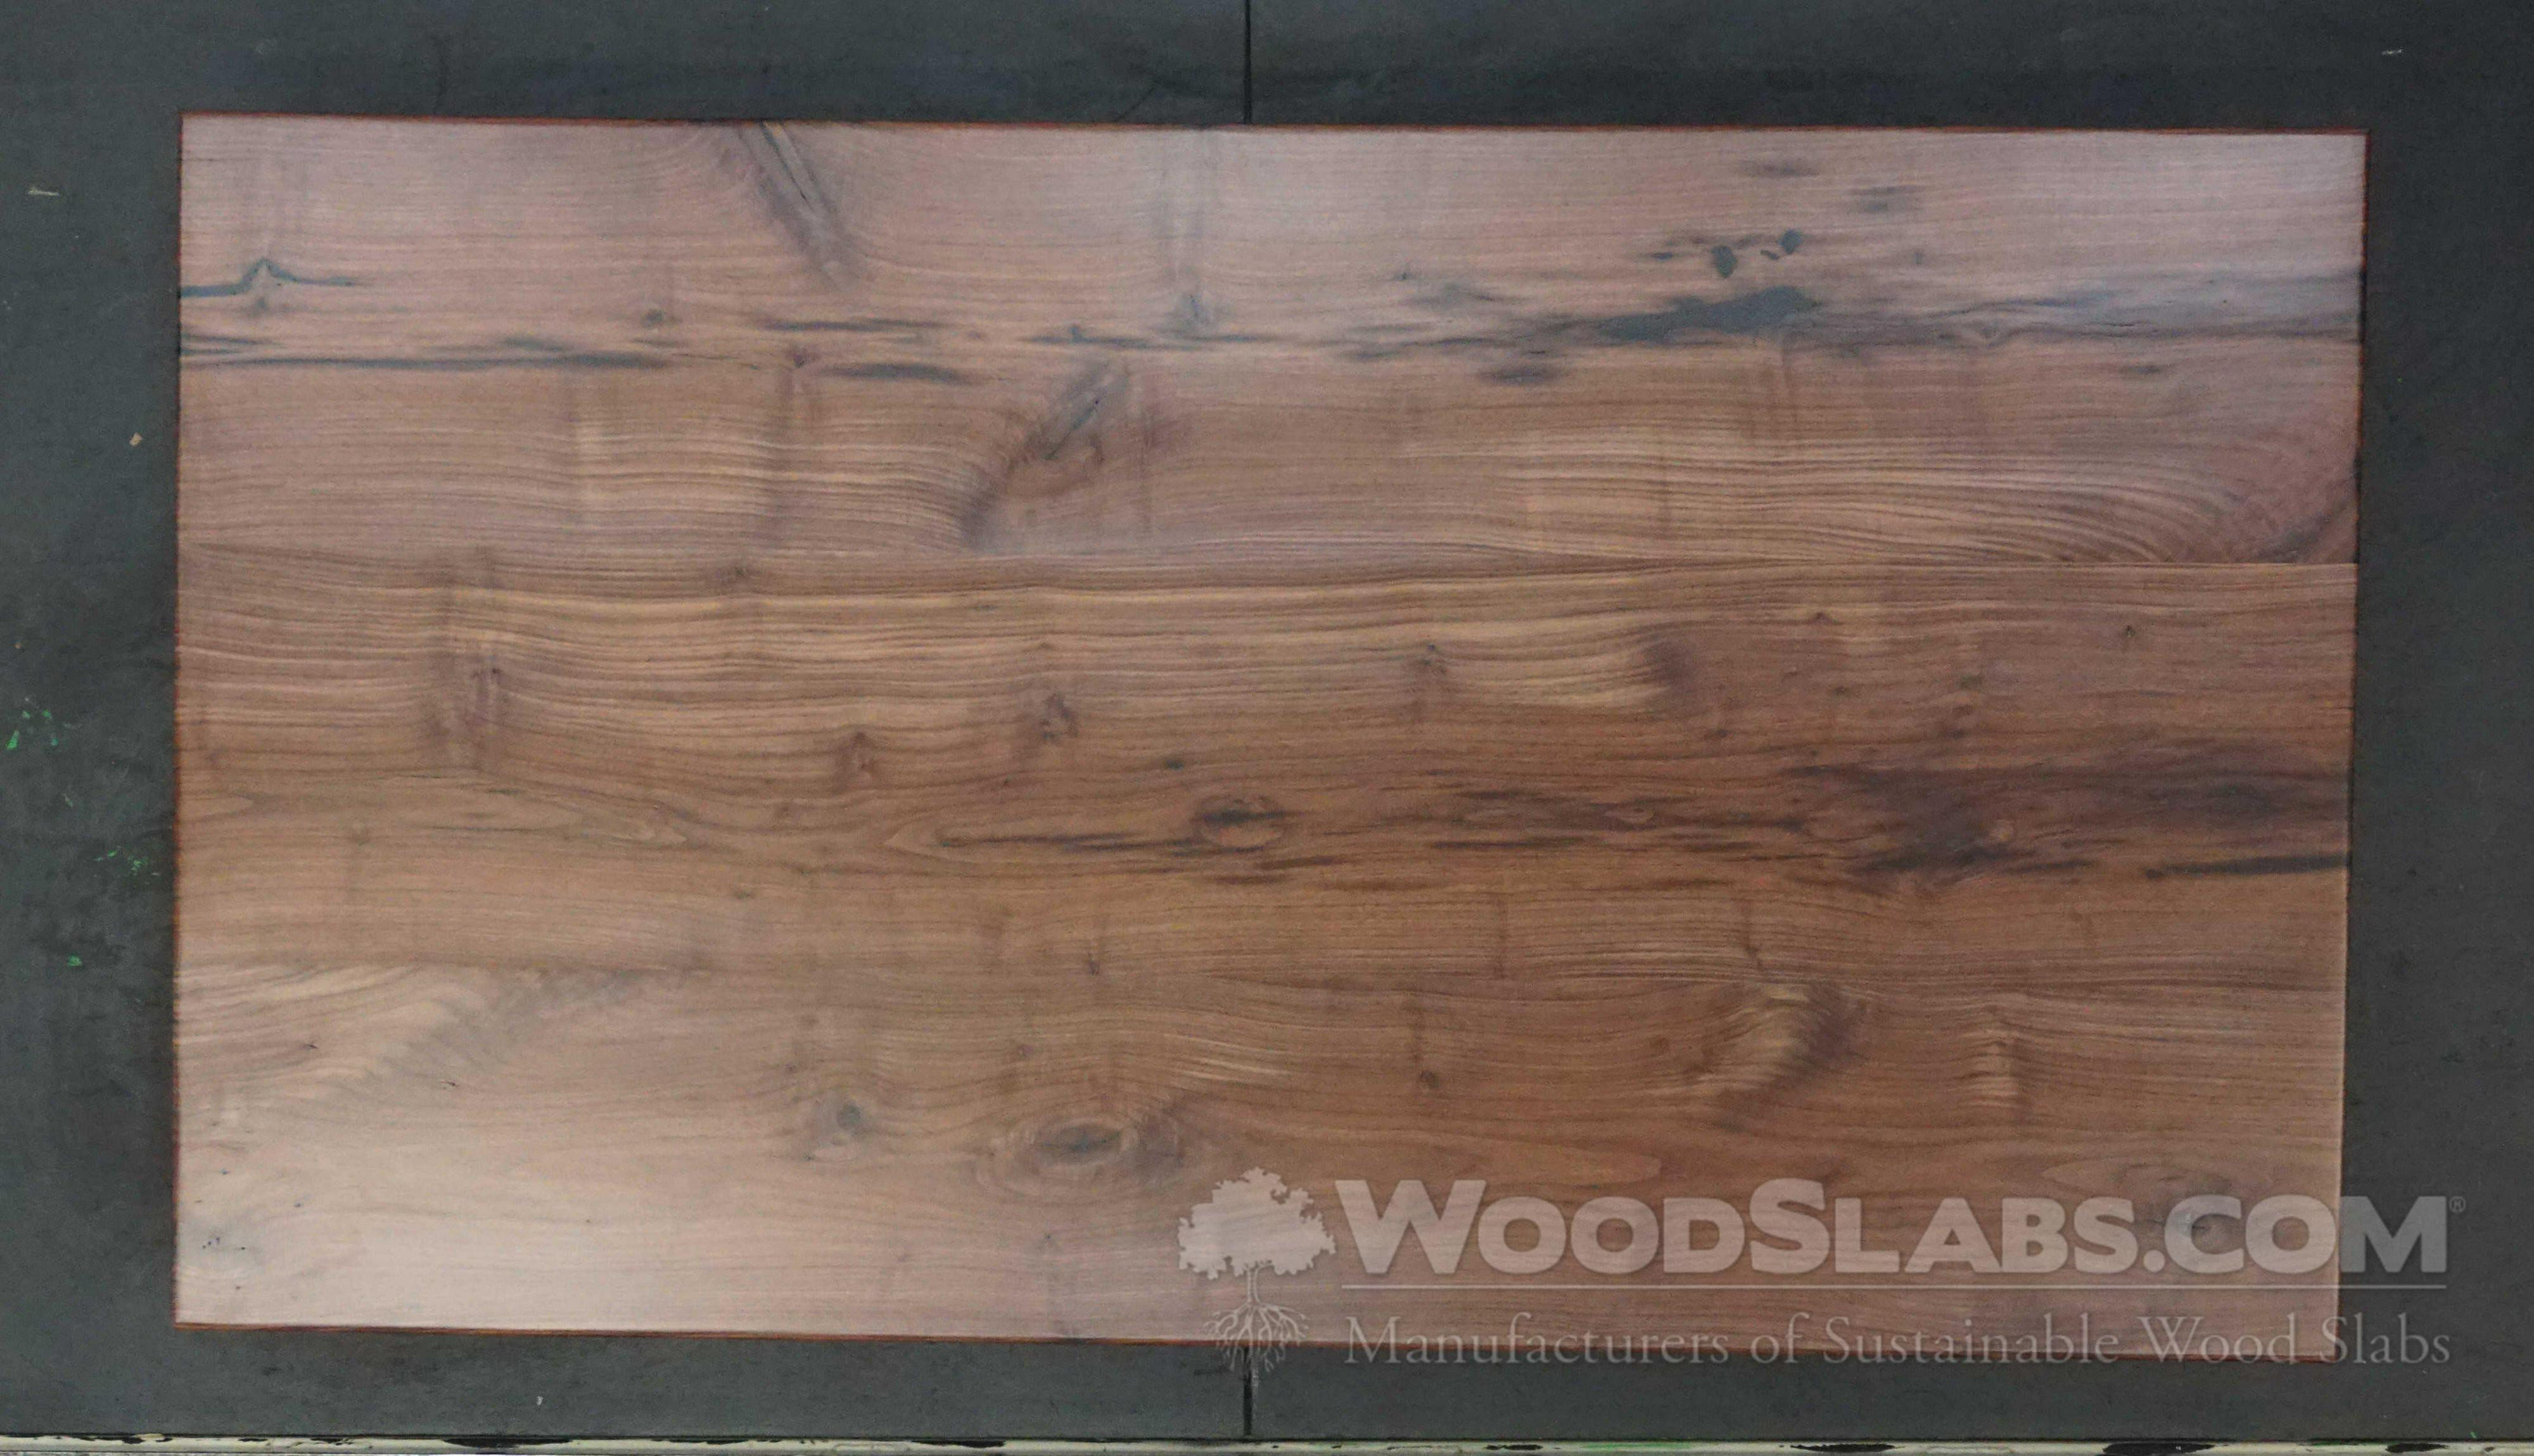 18 Stylish Hardwood Floor Refinishing Buffalo Ny 2024 free download hardwood floor refinishing buffalo ny of woodslabs com 1 and under 1 5 in walnut wood slab 206 r6e m6mz